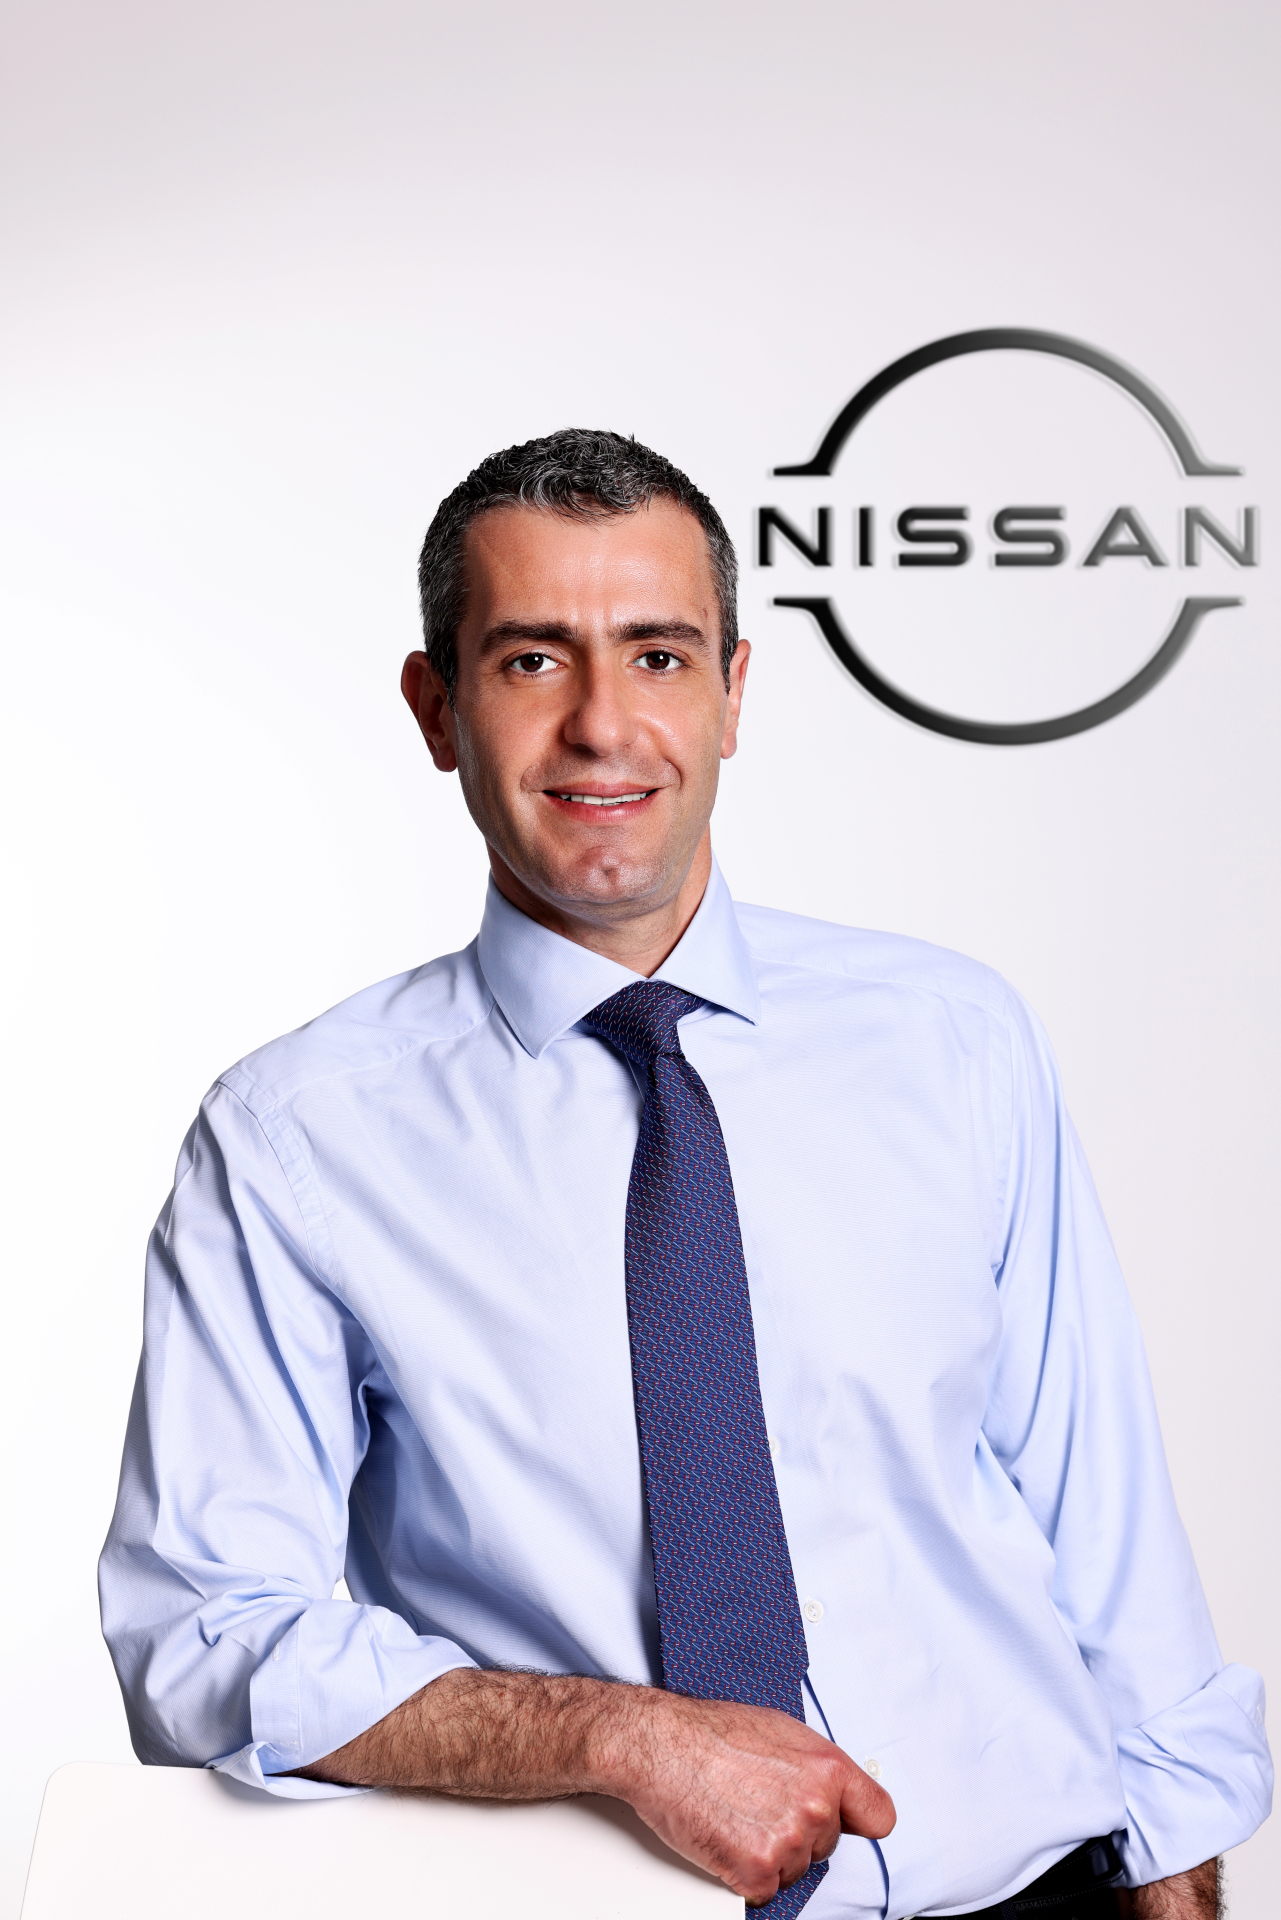 Nissan Türkiye’de atama